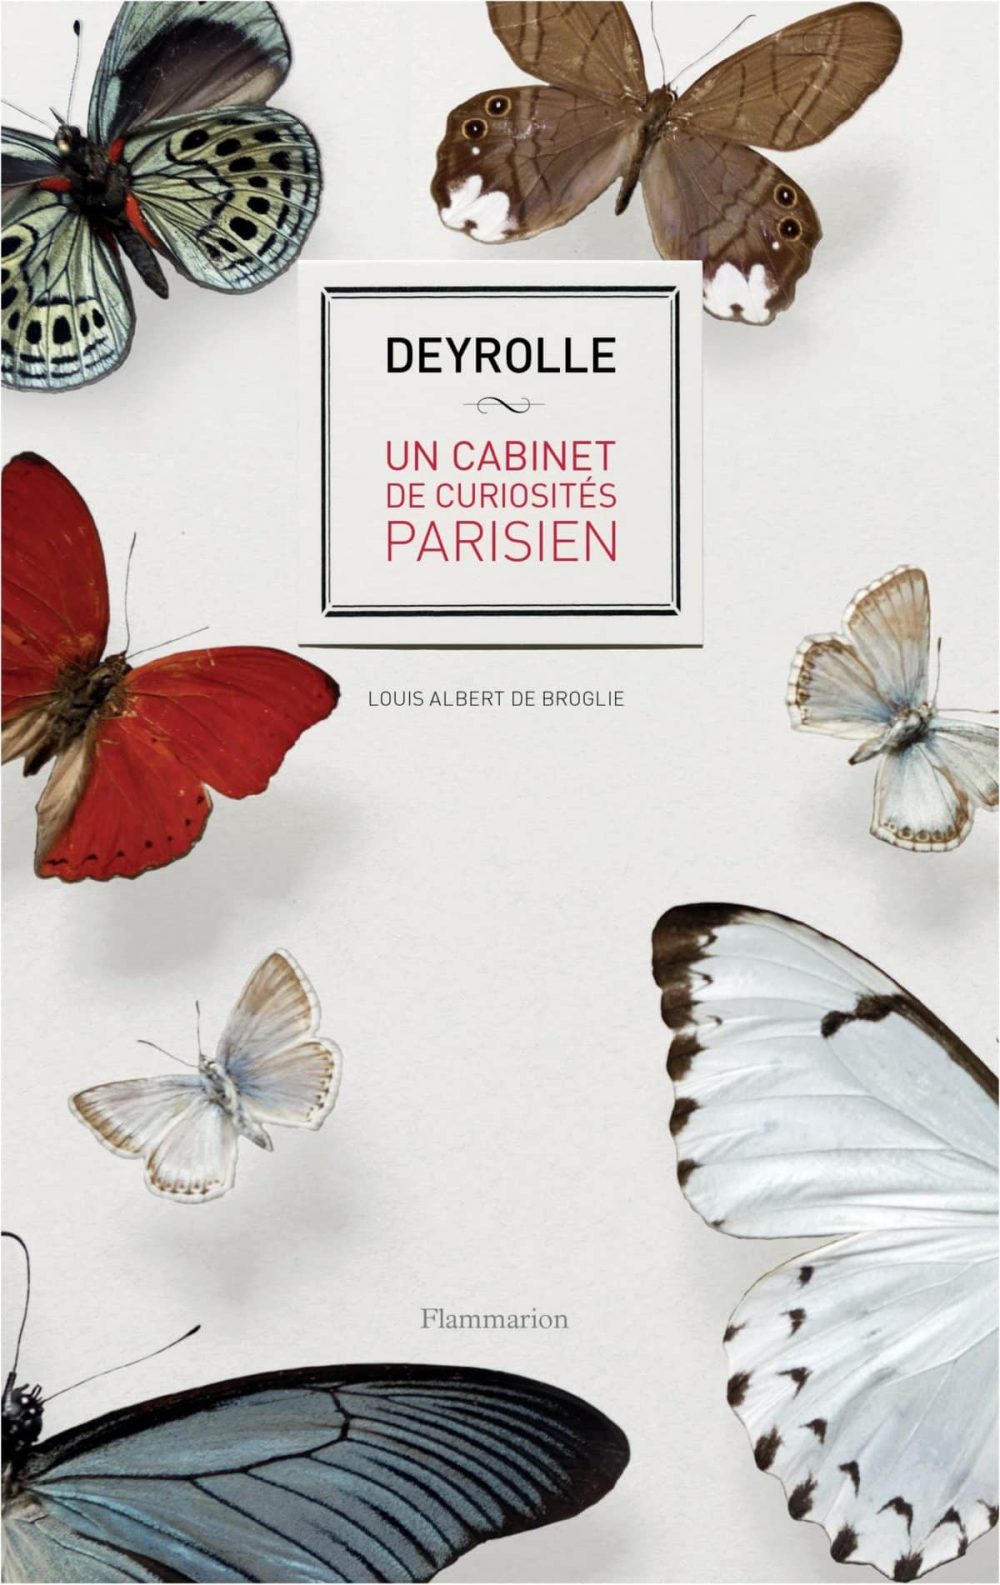 Deyrolle, un cabinet de curiosités parisien dans un livre